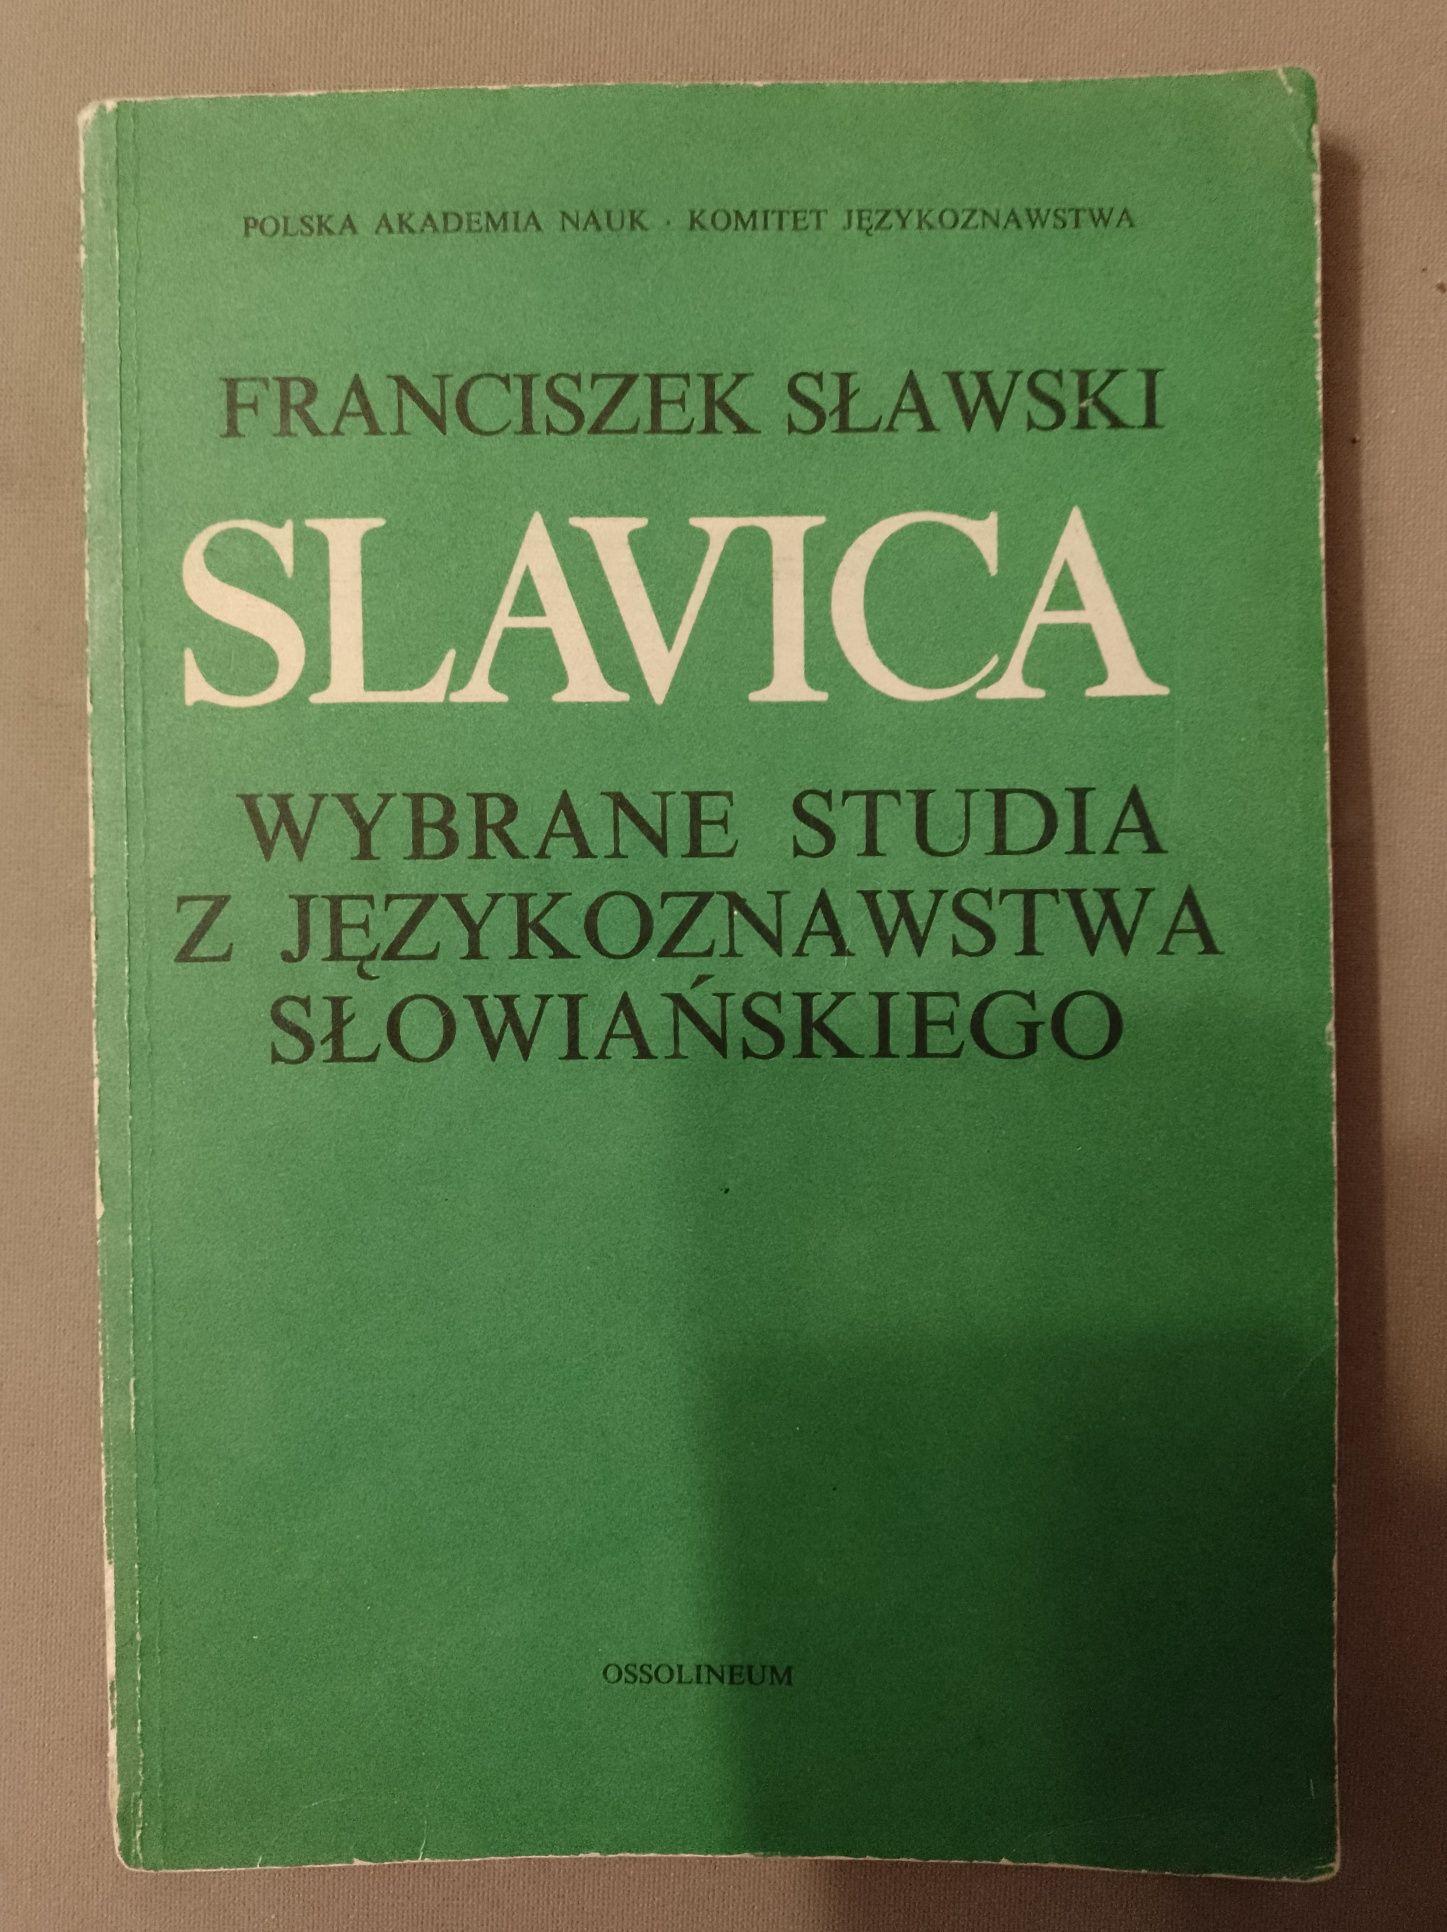 Franciszek Sławski, Slavica. Wybrane studia z językoznawstwa